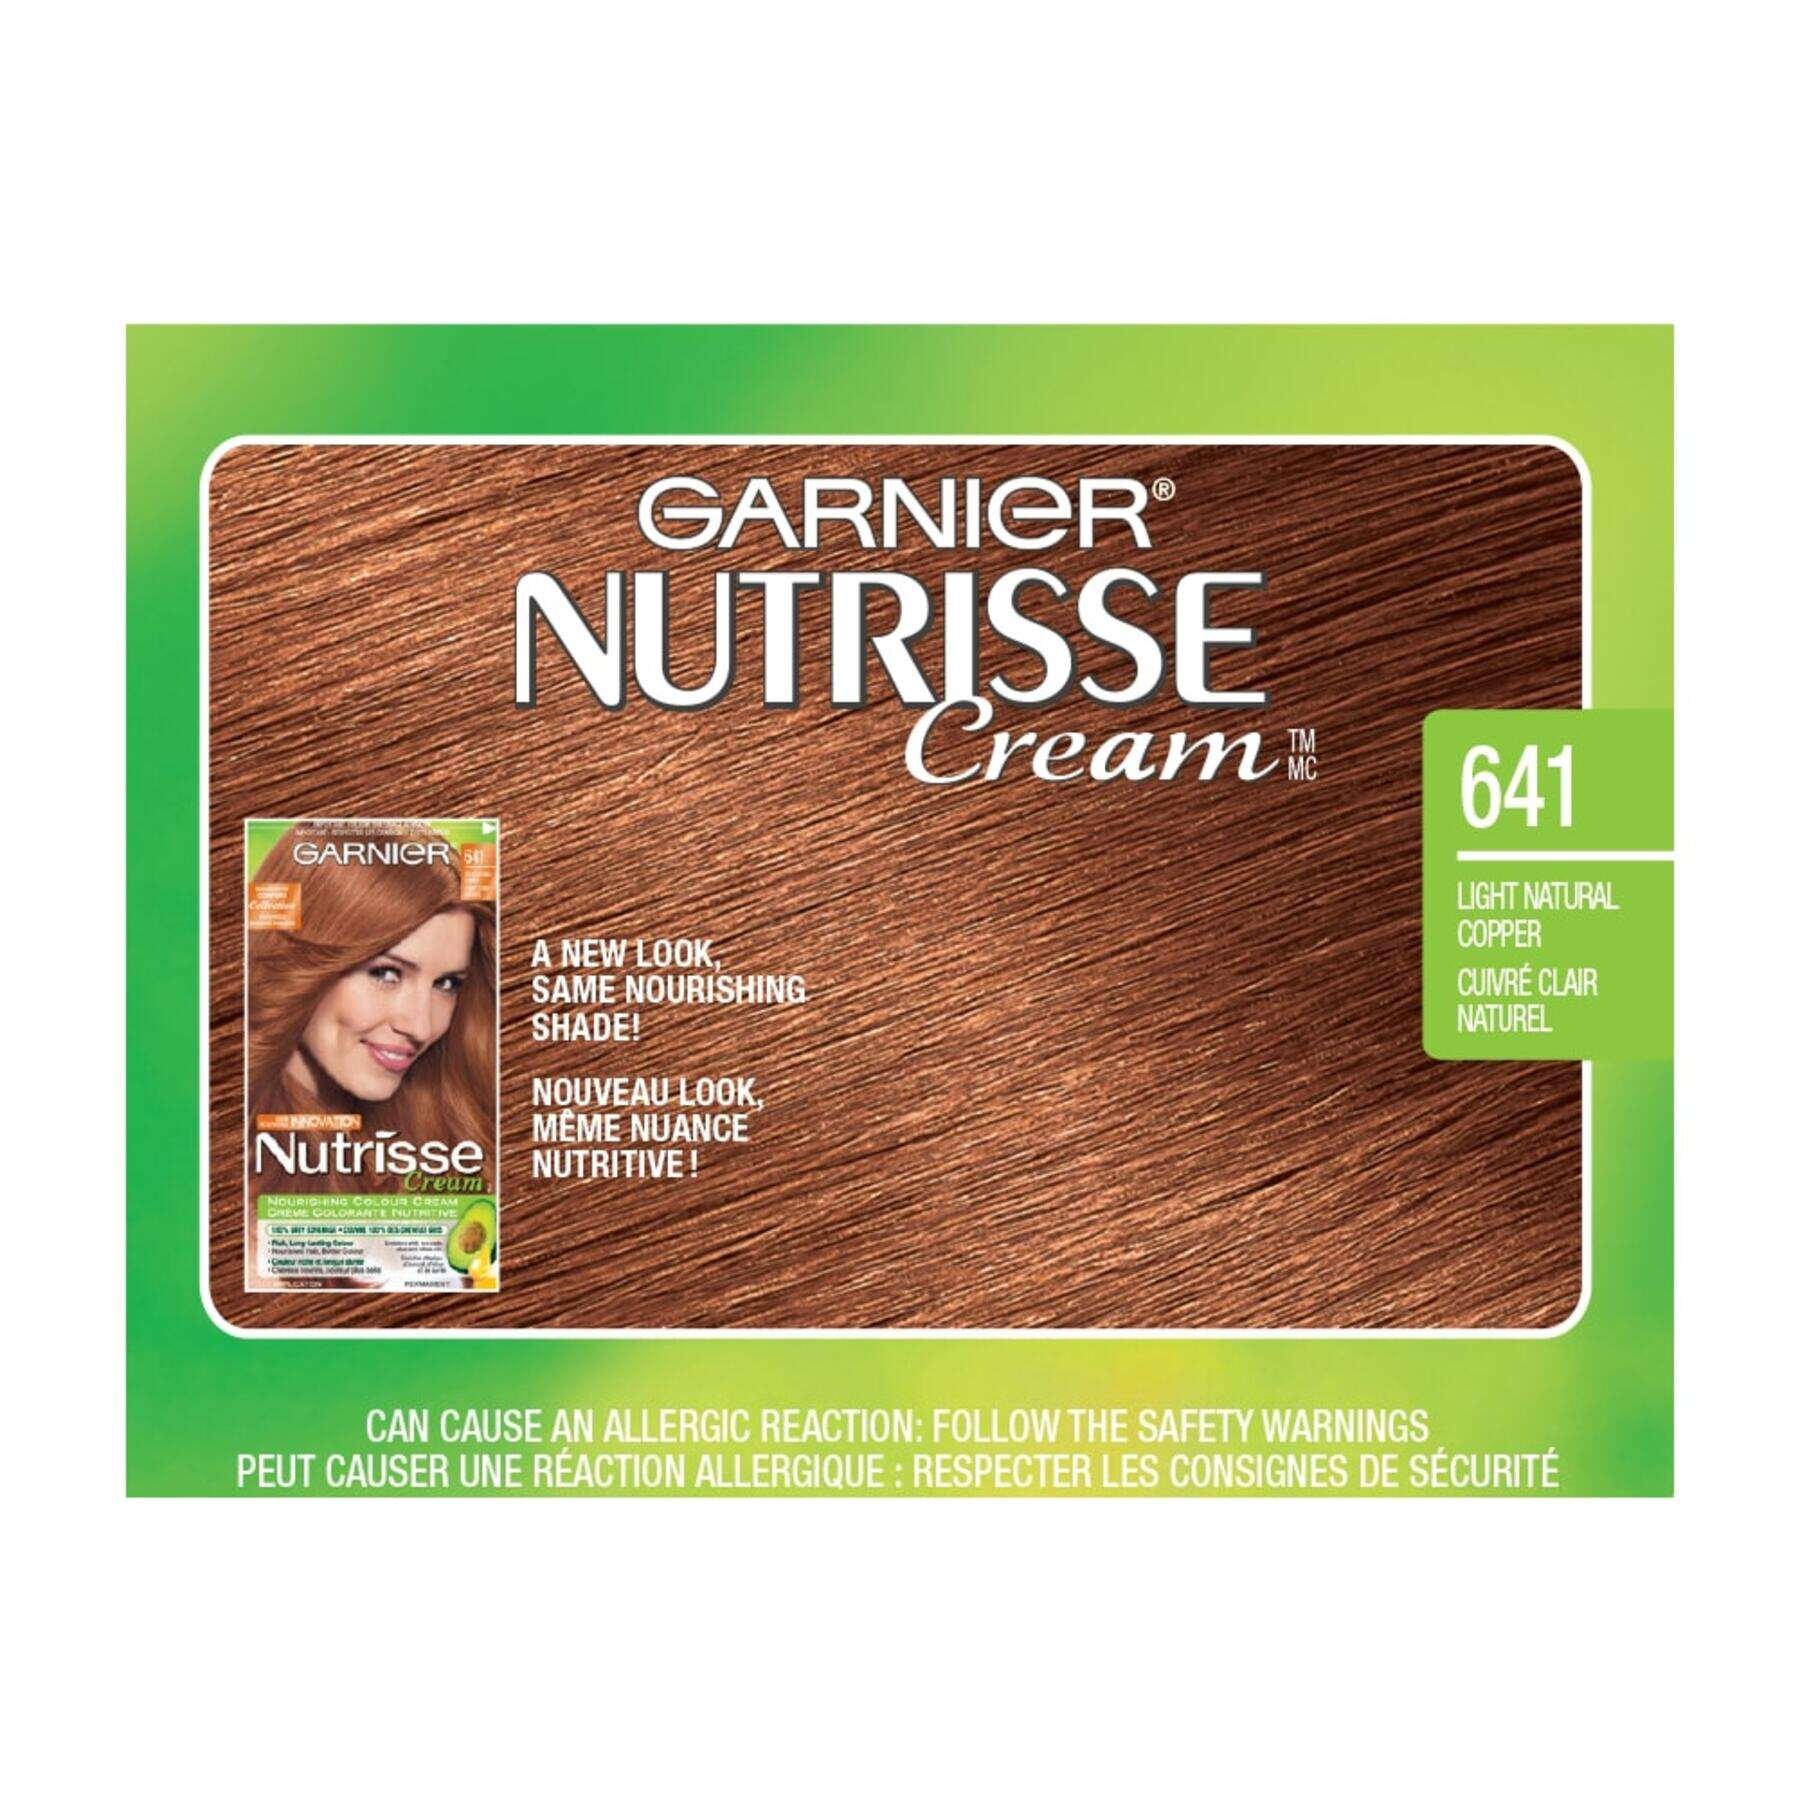 garnier hair dye nutrisse cream 641 light natural copper 0603084400508 swatch